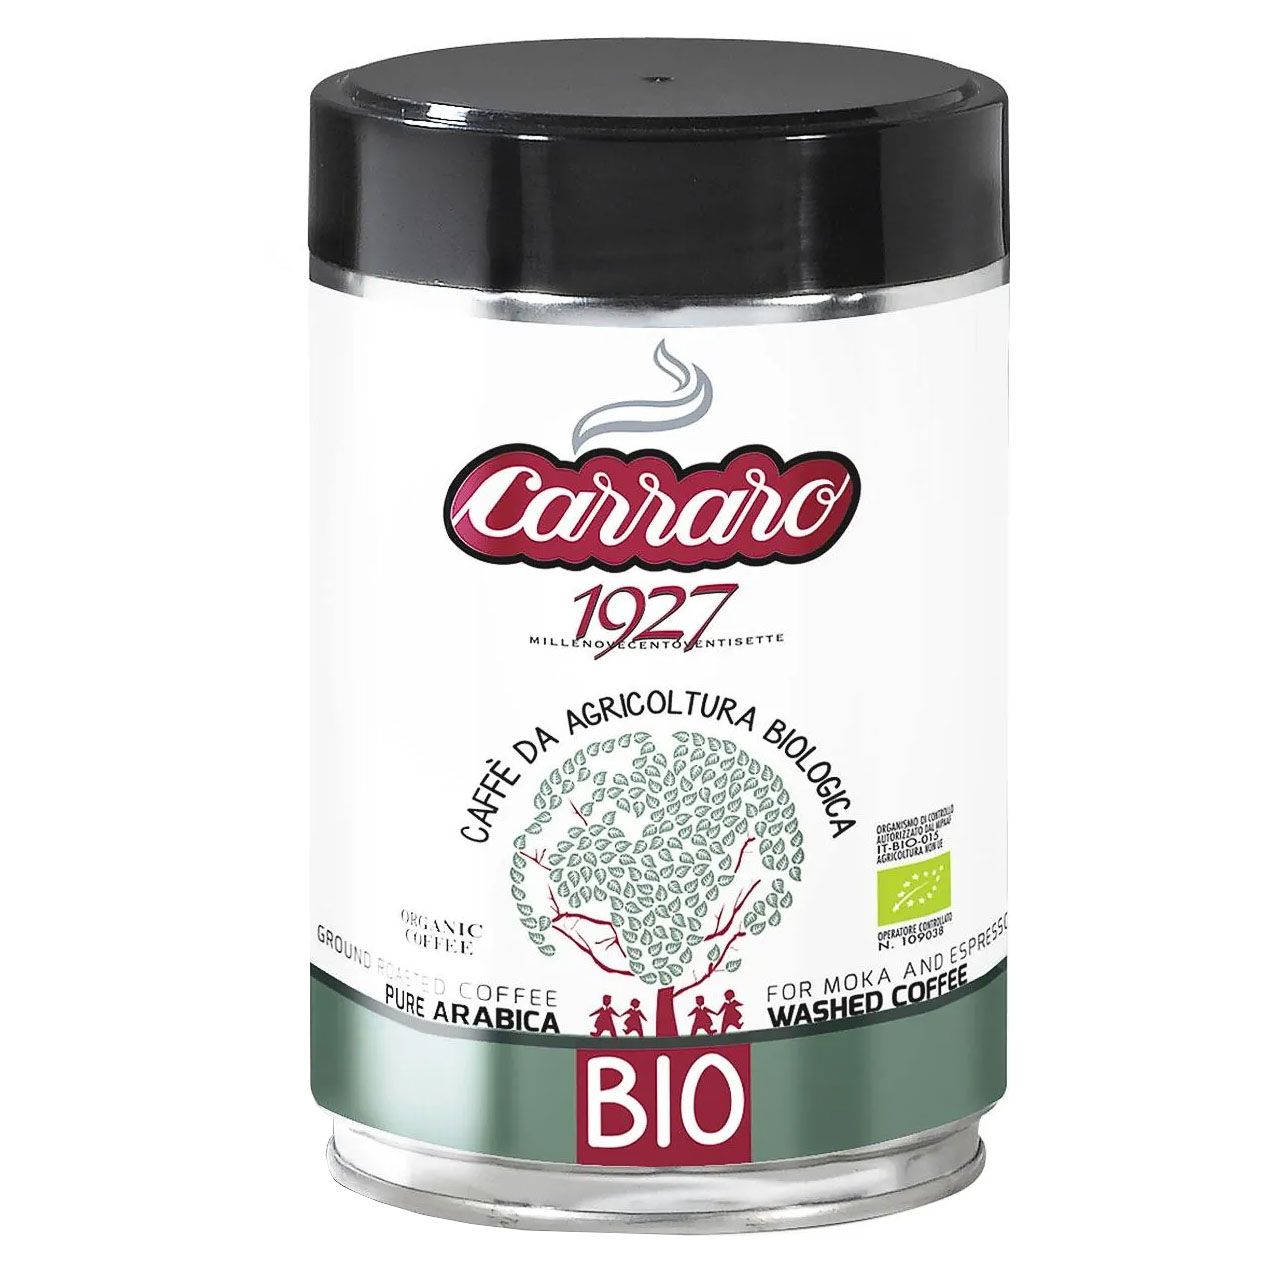 Кофе молотый Carraro BIO жестяная банка 250Г кофейник carraro икт italco milano 4ч мол кофе brasile 250г